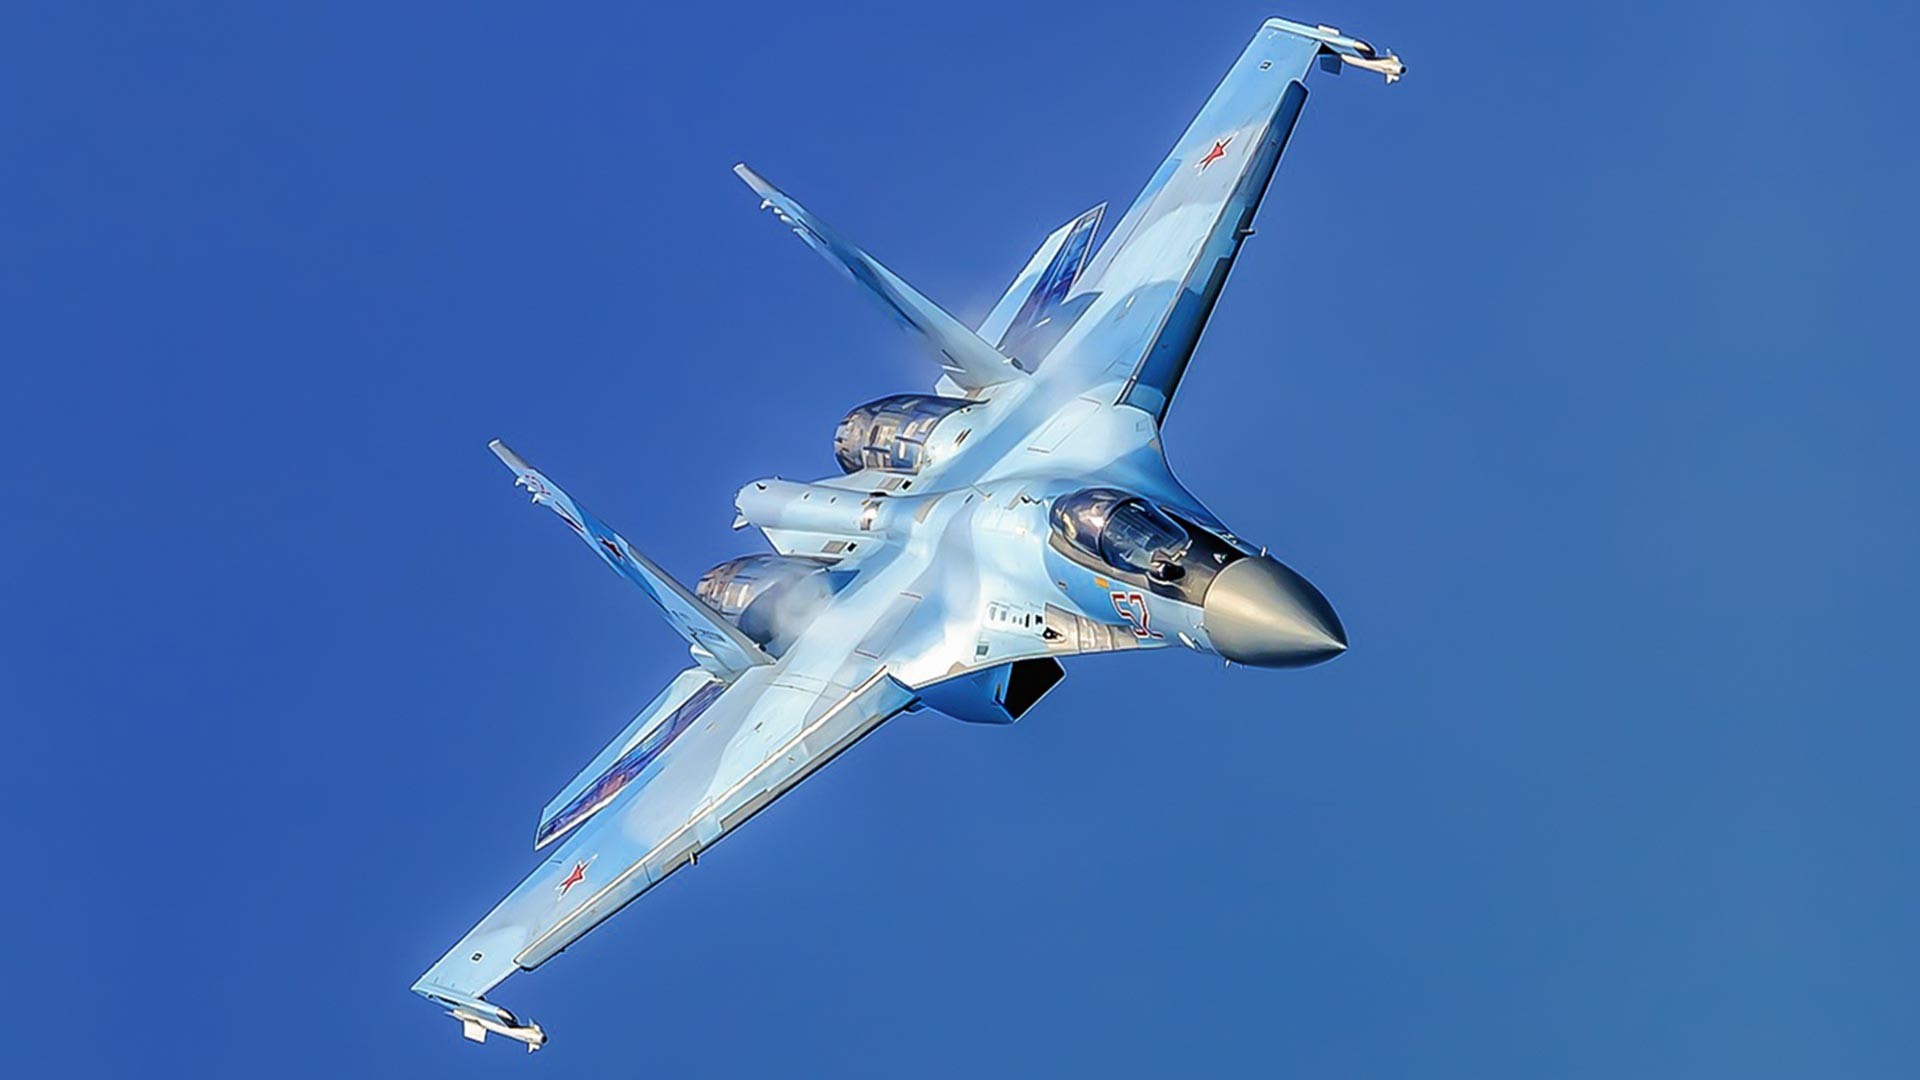  戦闘機Su-35S